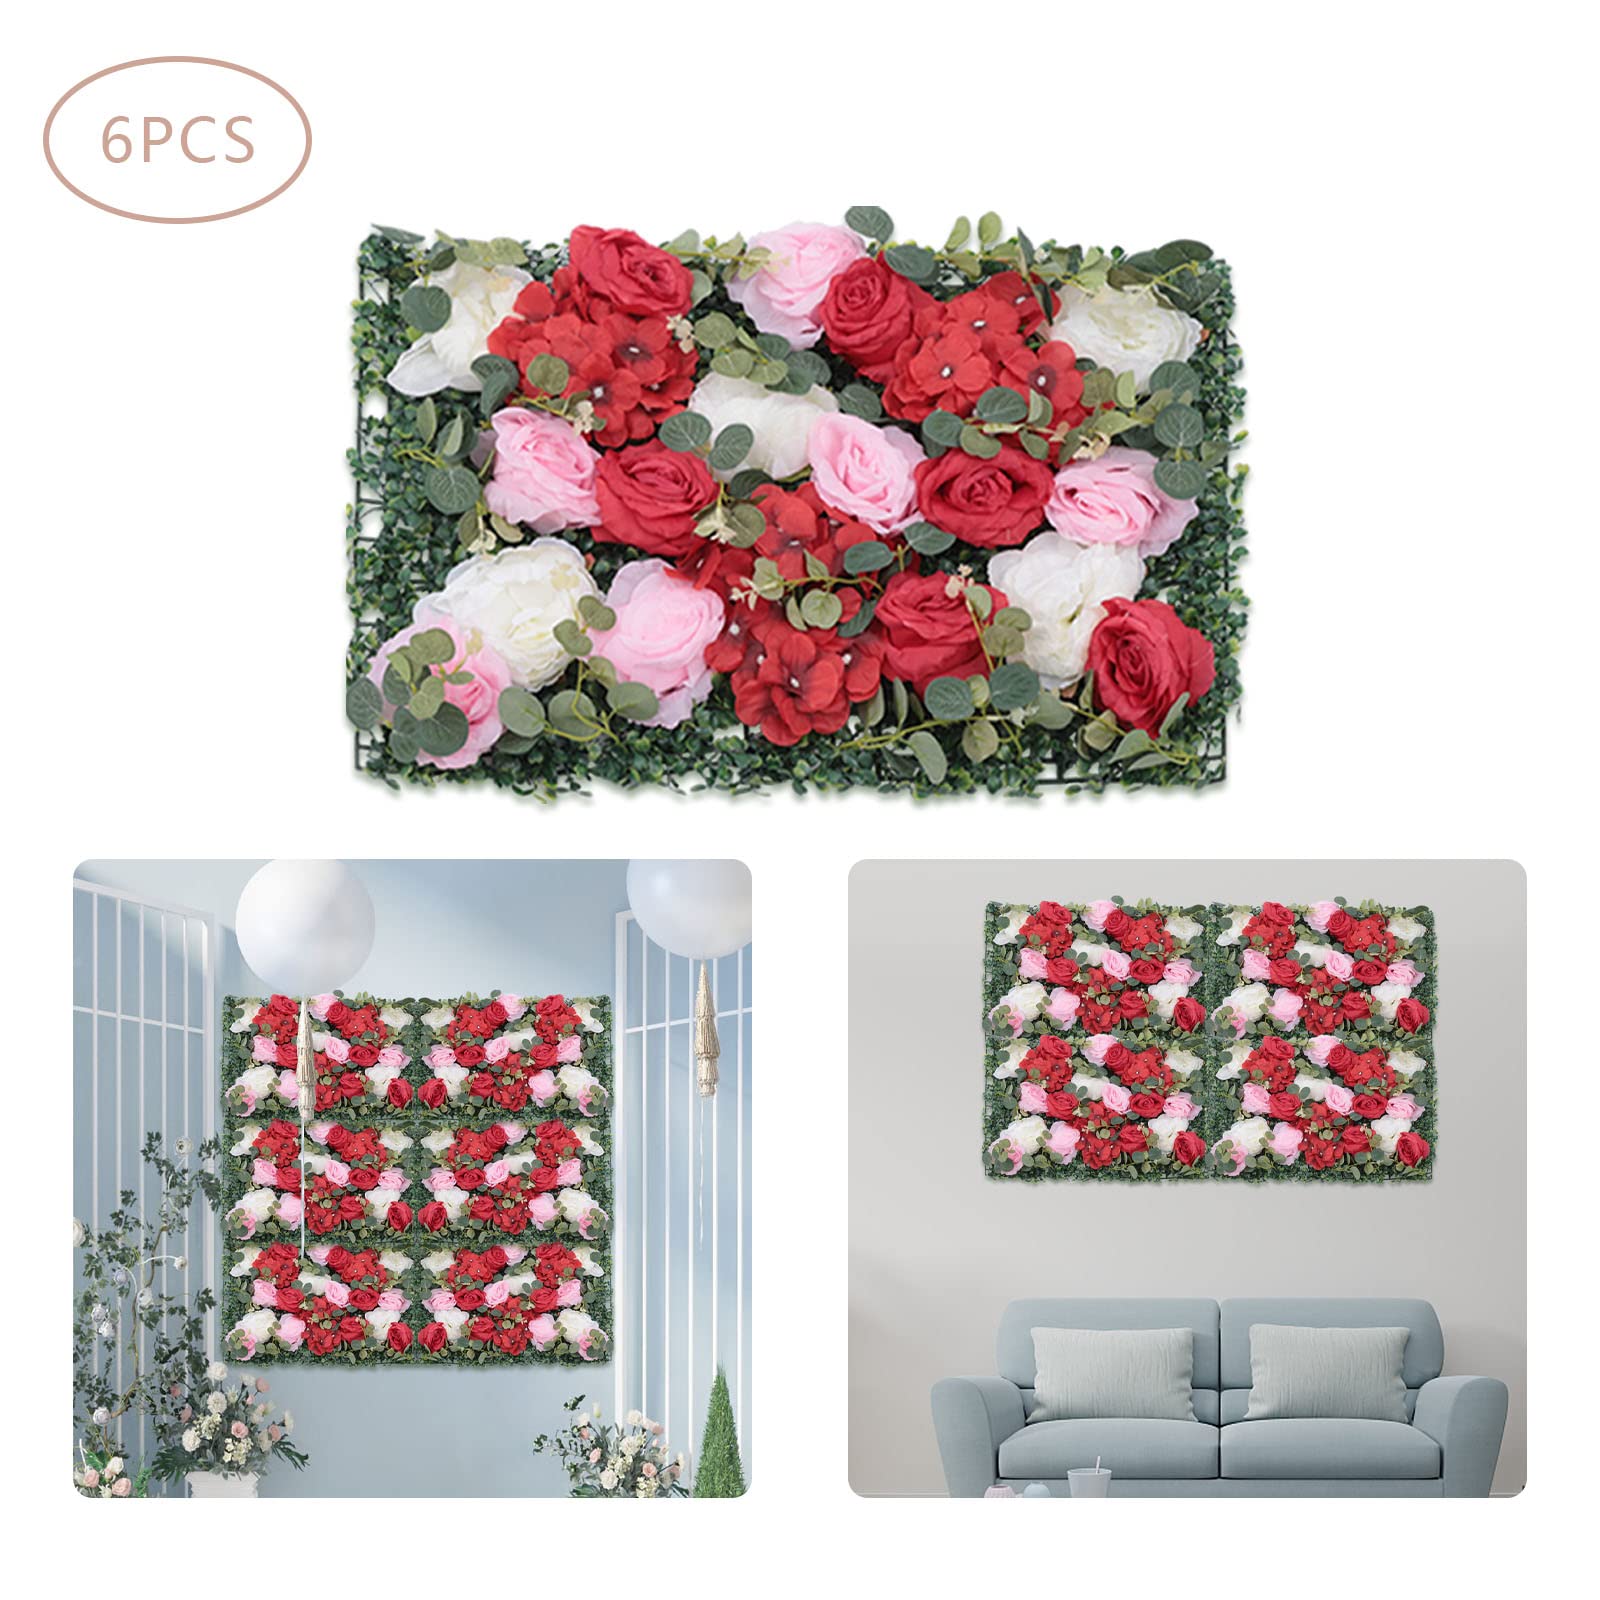 6 pannelli da parete per fiori artificiali